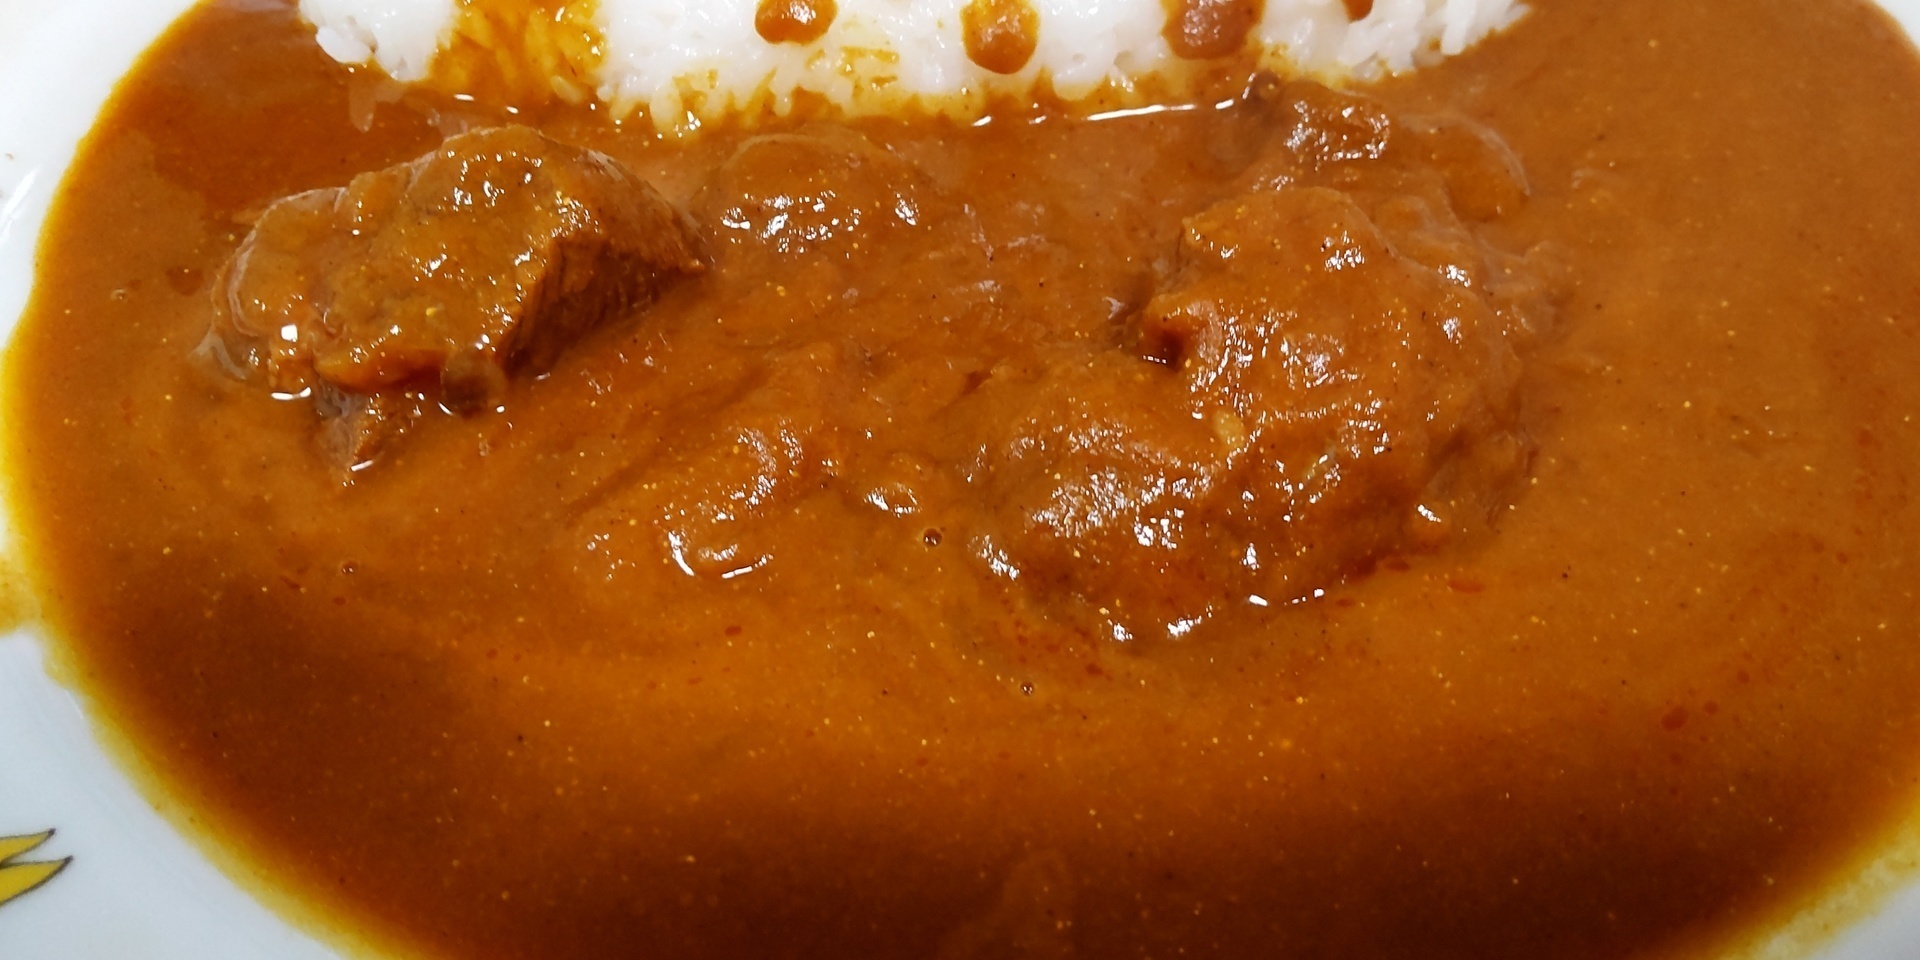 鎌倉薬膳Curry: ご当地レトルトカレーで単身赴任の寂しい夕食